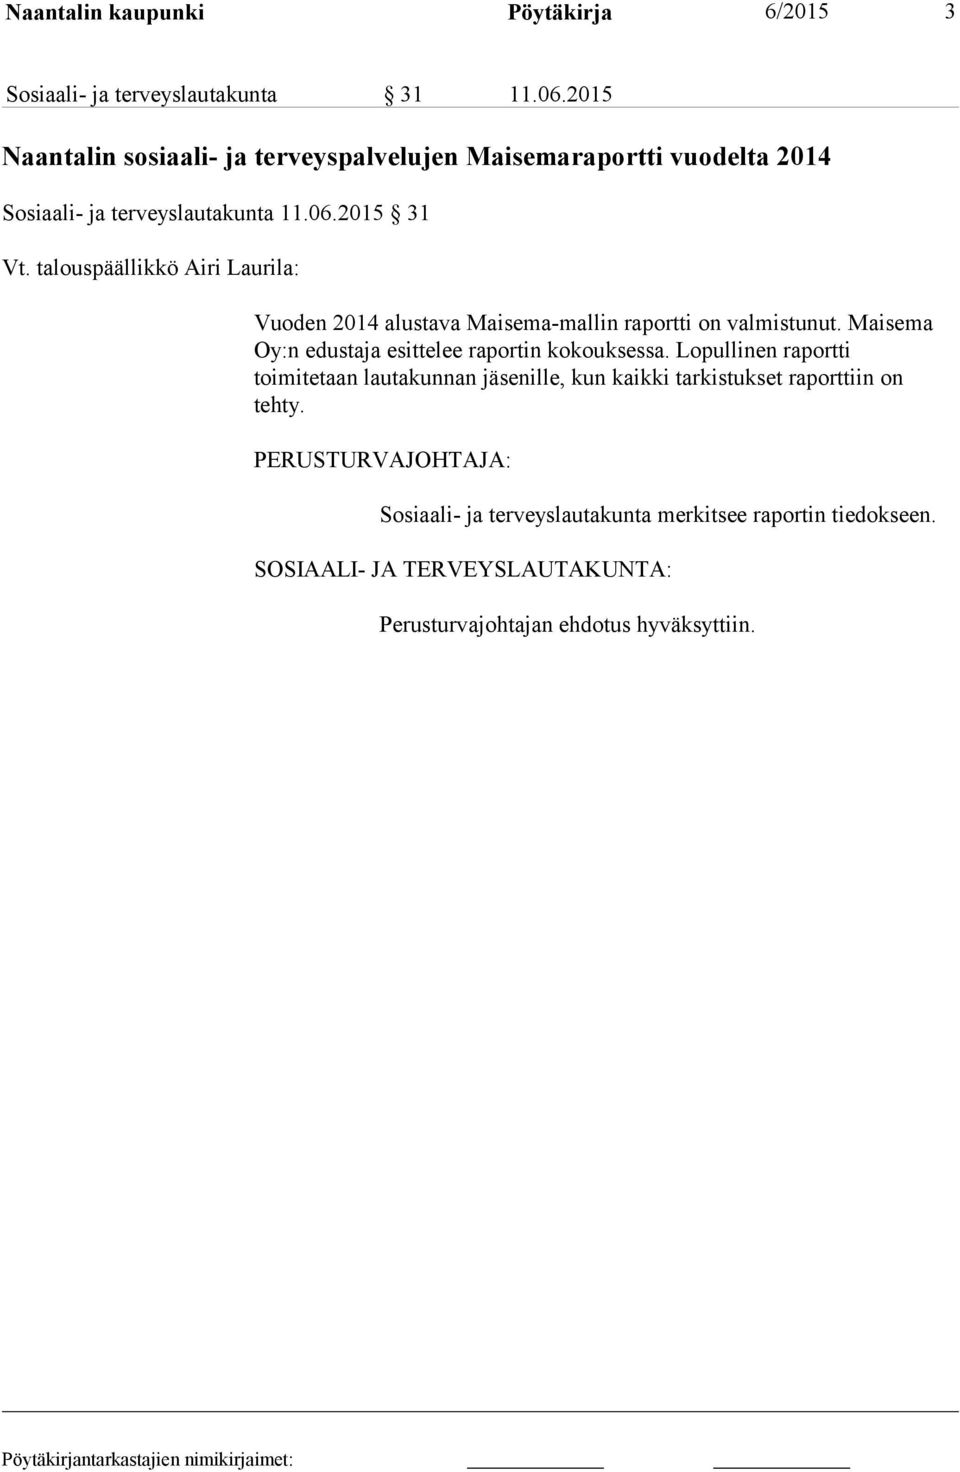 talouspäällikkö Airi Laurila: Vuoden 2014 alustava Maisema-mallin raportti on valmistunut. Maisema Oy:n edustaja esittelee raportin kokouksessa.